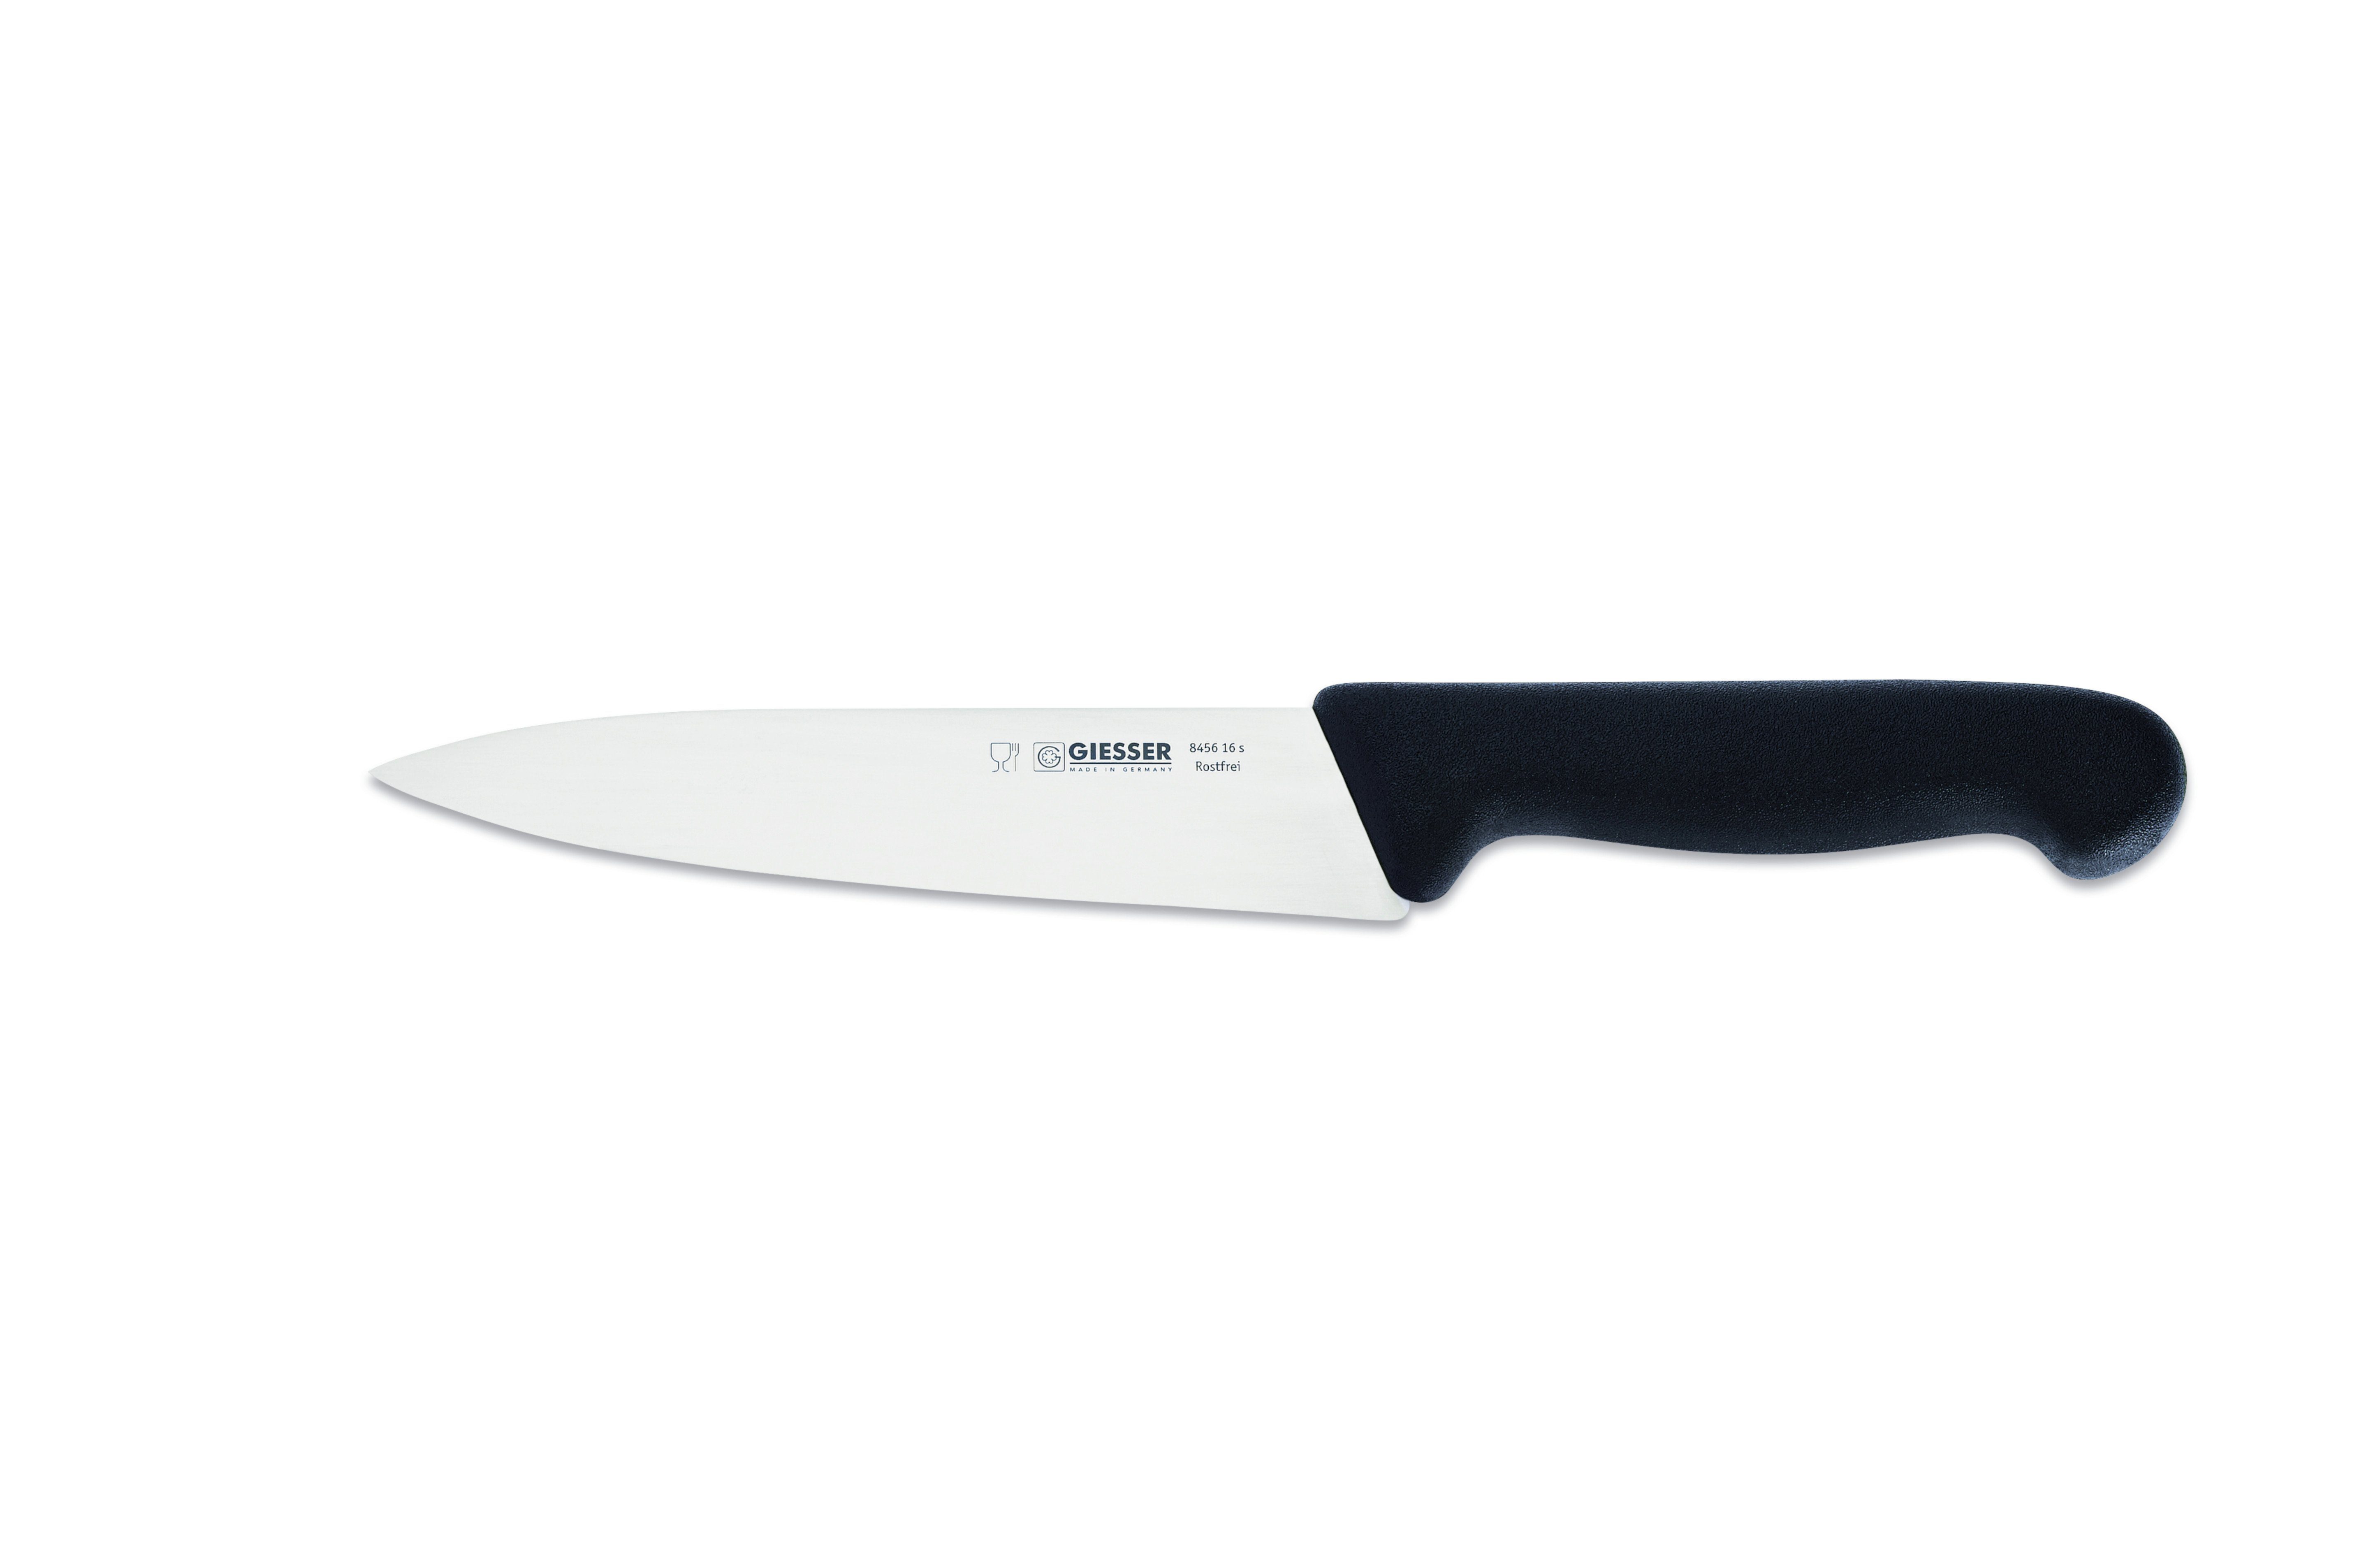 Giesser Messer Kochmesser Küchenmesser 8456, schmale, mittelspitze Klinge, scharf Handabzug, Ideal für jede Küche schwarz